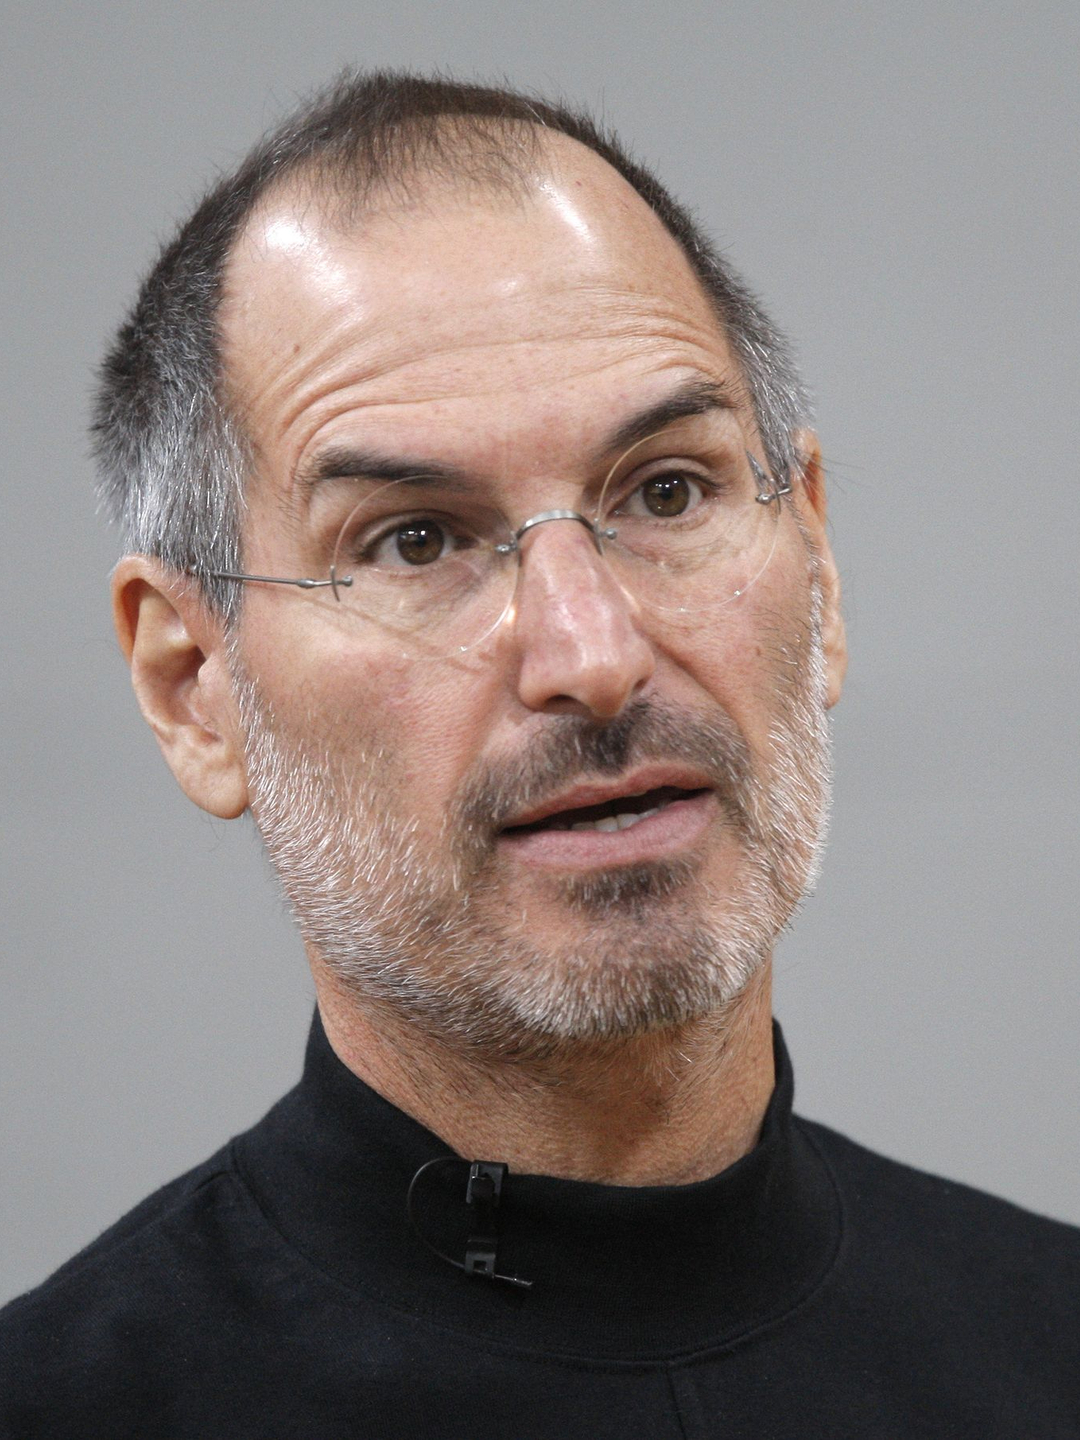 Steve Jobs life path